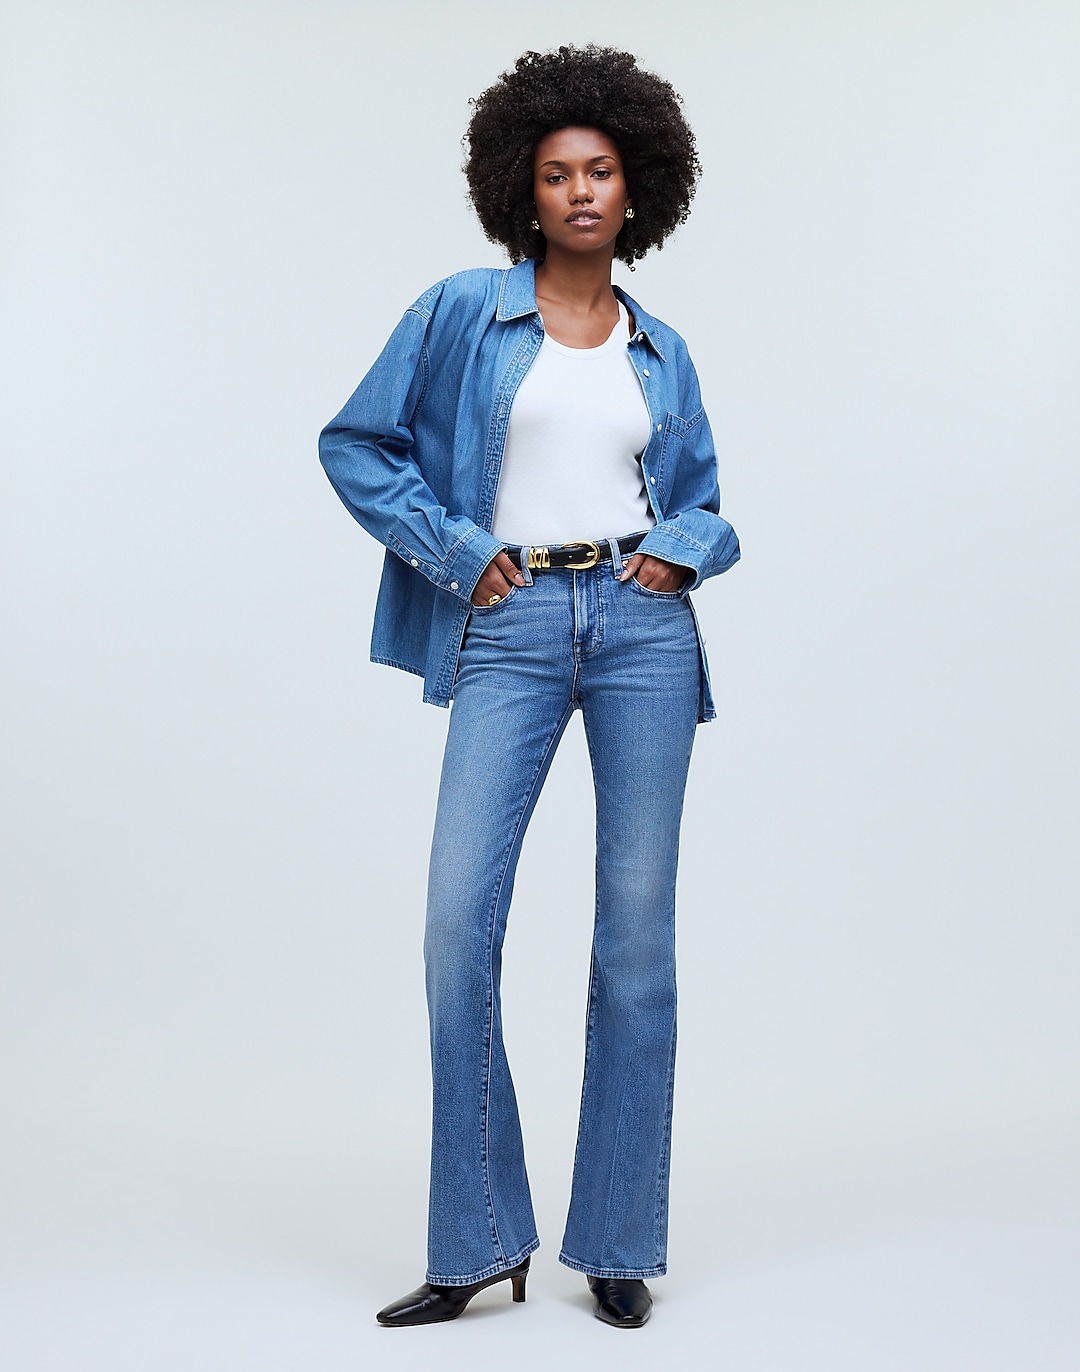 Flea Market Flare Jeans | Madewell